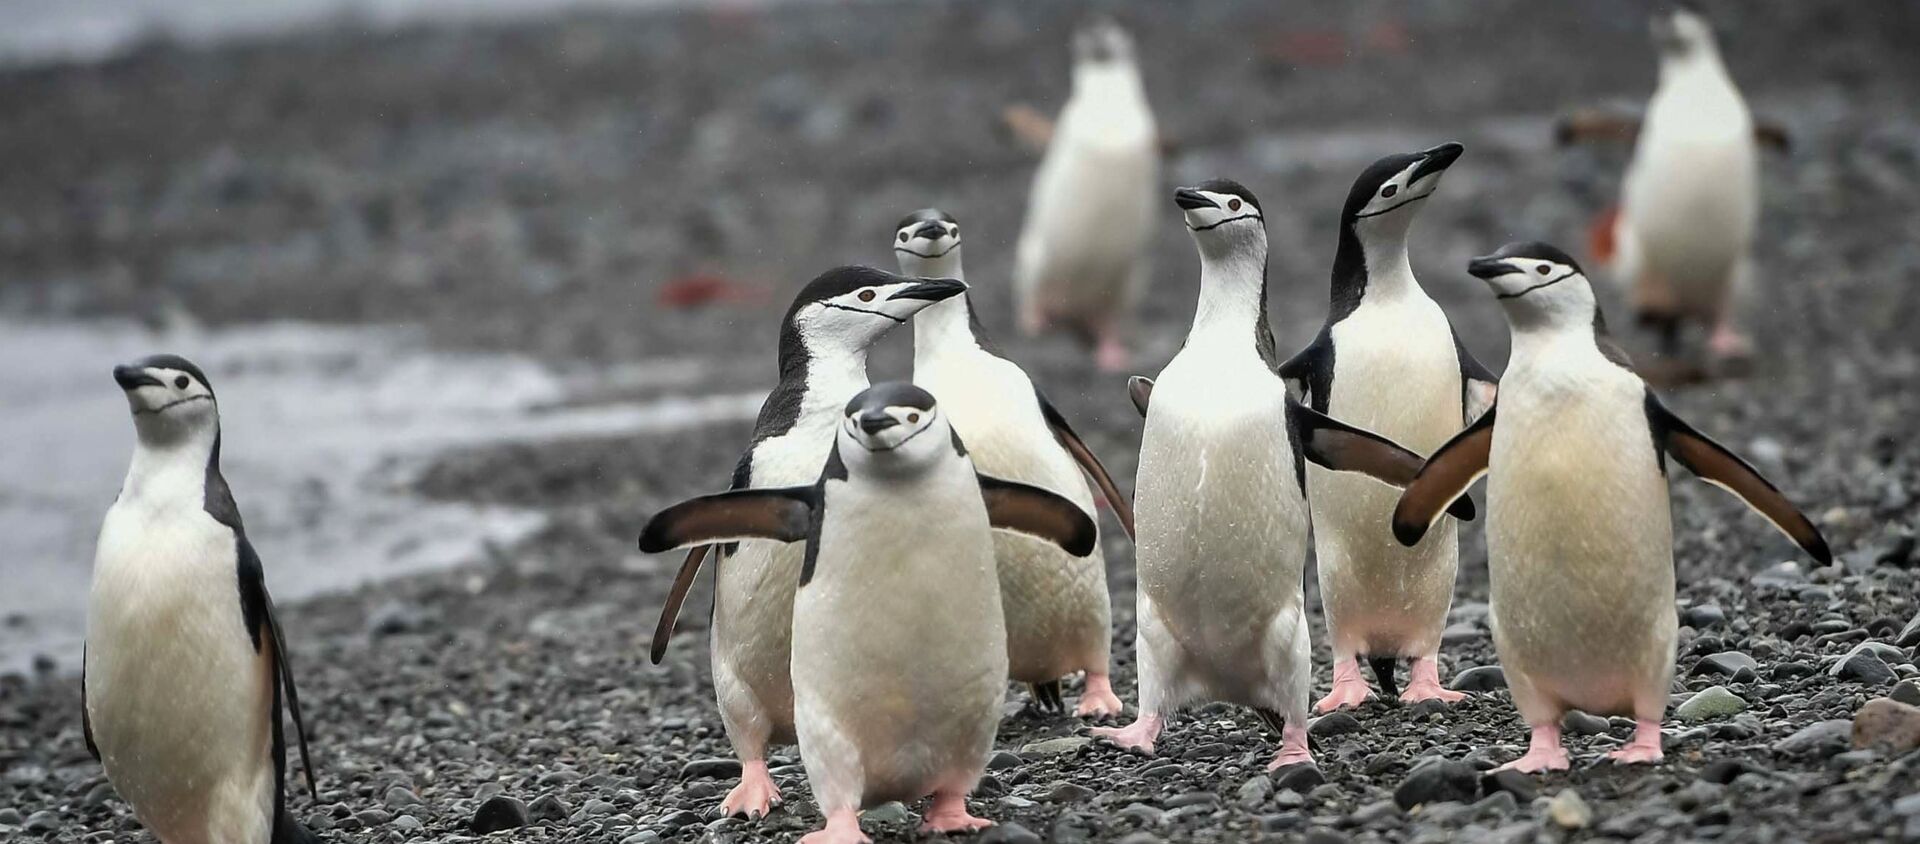 Антарктические пингвины на острове Кинг-Джордж (Ватерлоо) в Антарктиде. - Sputnik Узбекистан, 1920, 08.02.2020